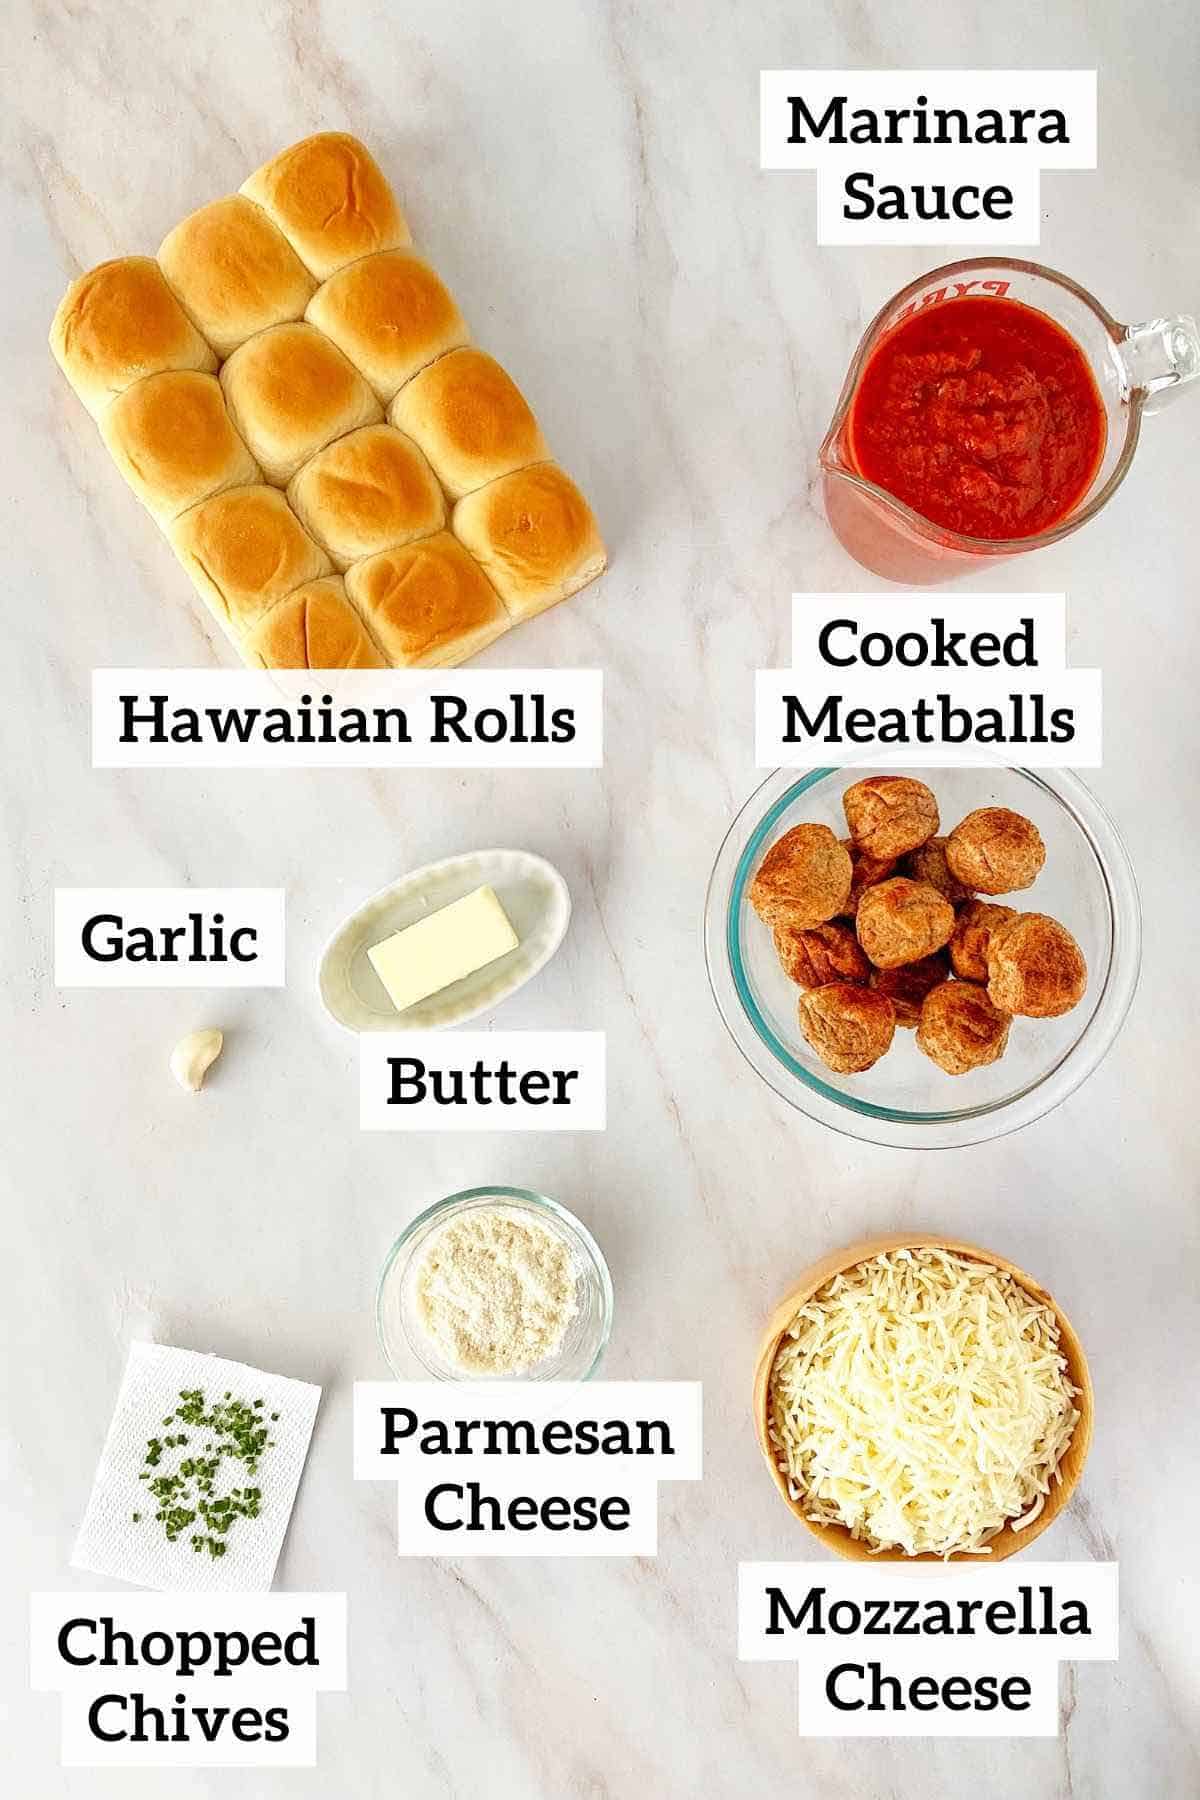 Hawaiian rolls, marinara sauce, meatballs, cheese, butter, garlic and seasonings.